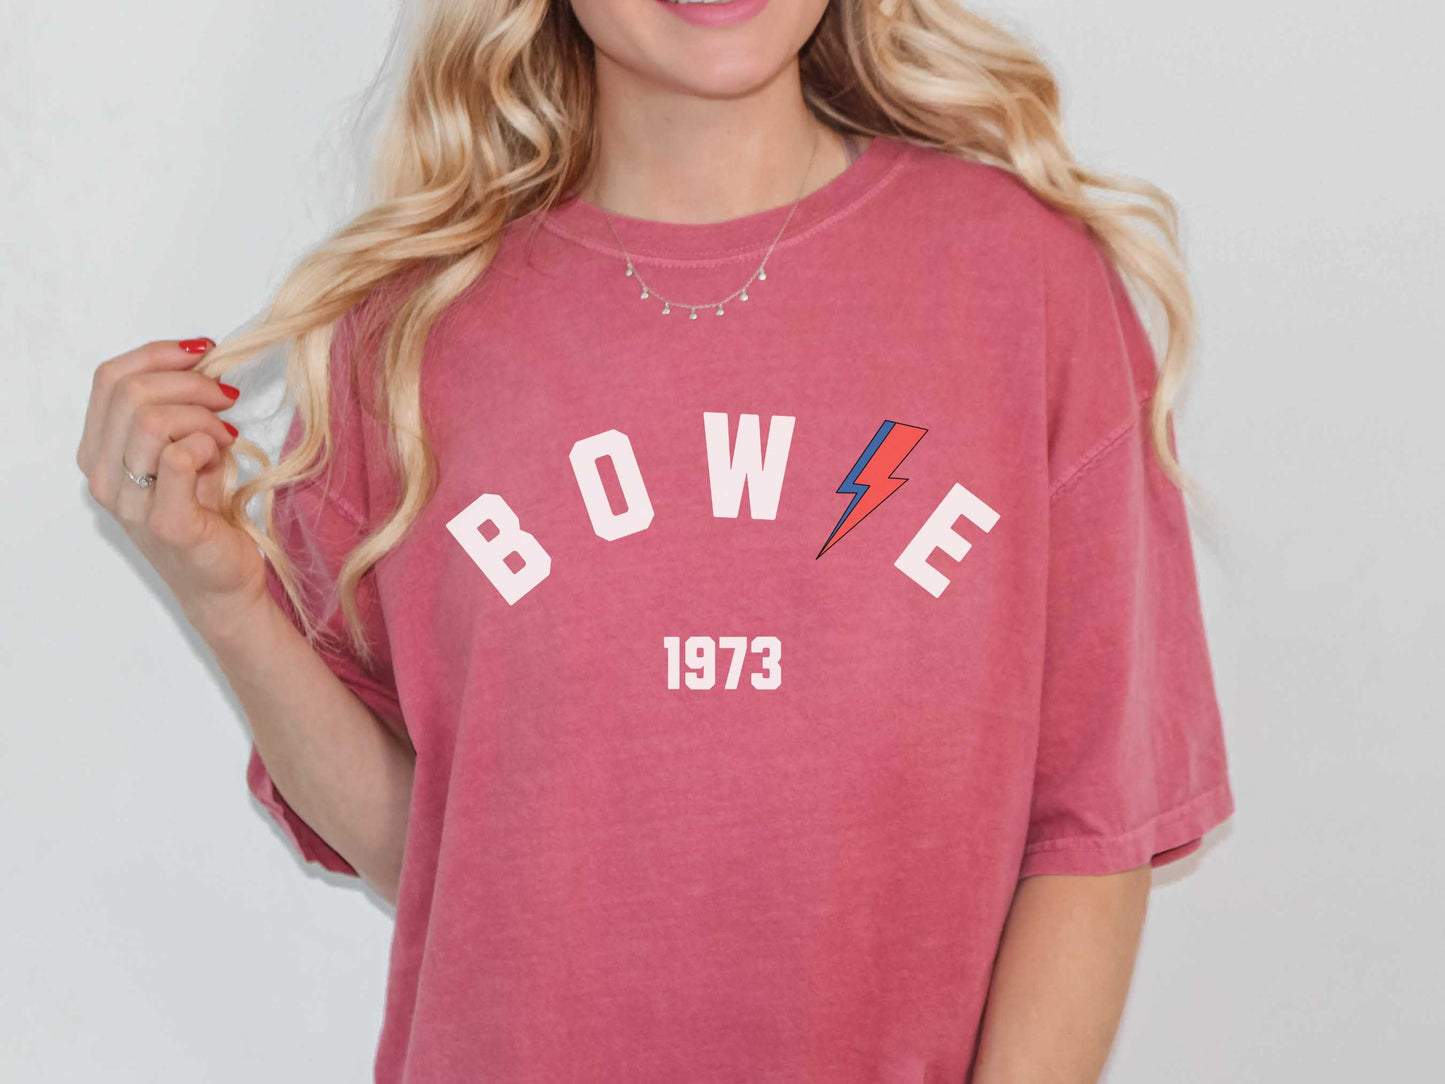 David Bowie "Bowie 1973" T-Shirt in Crimson